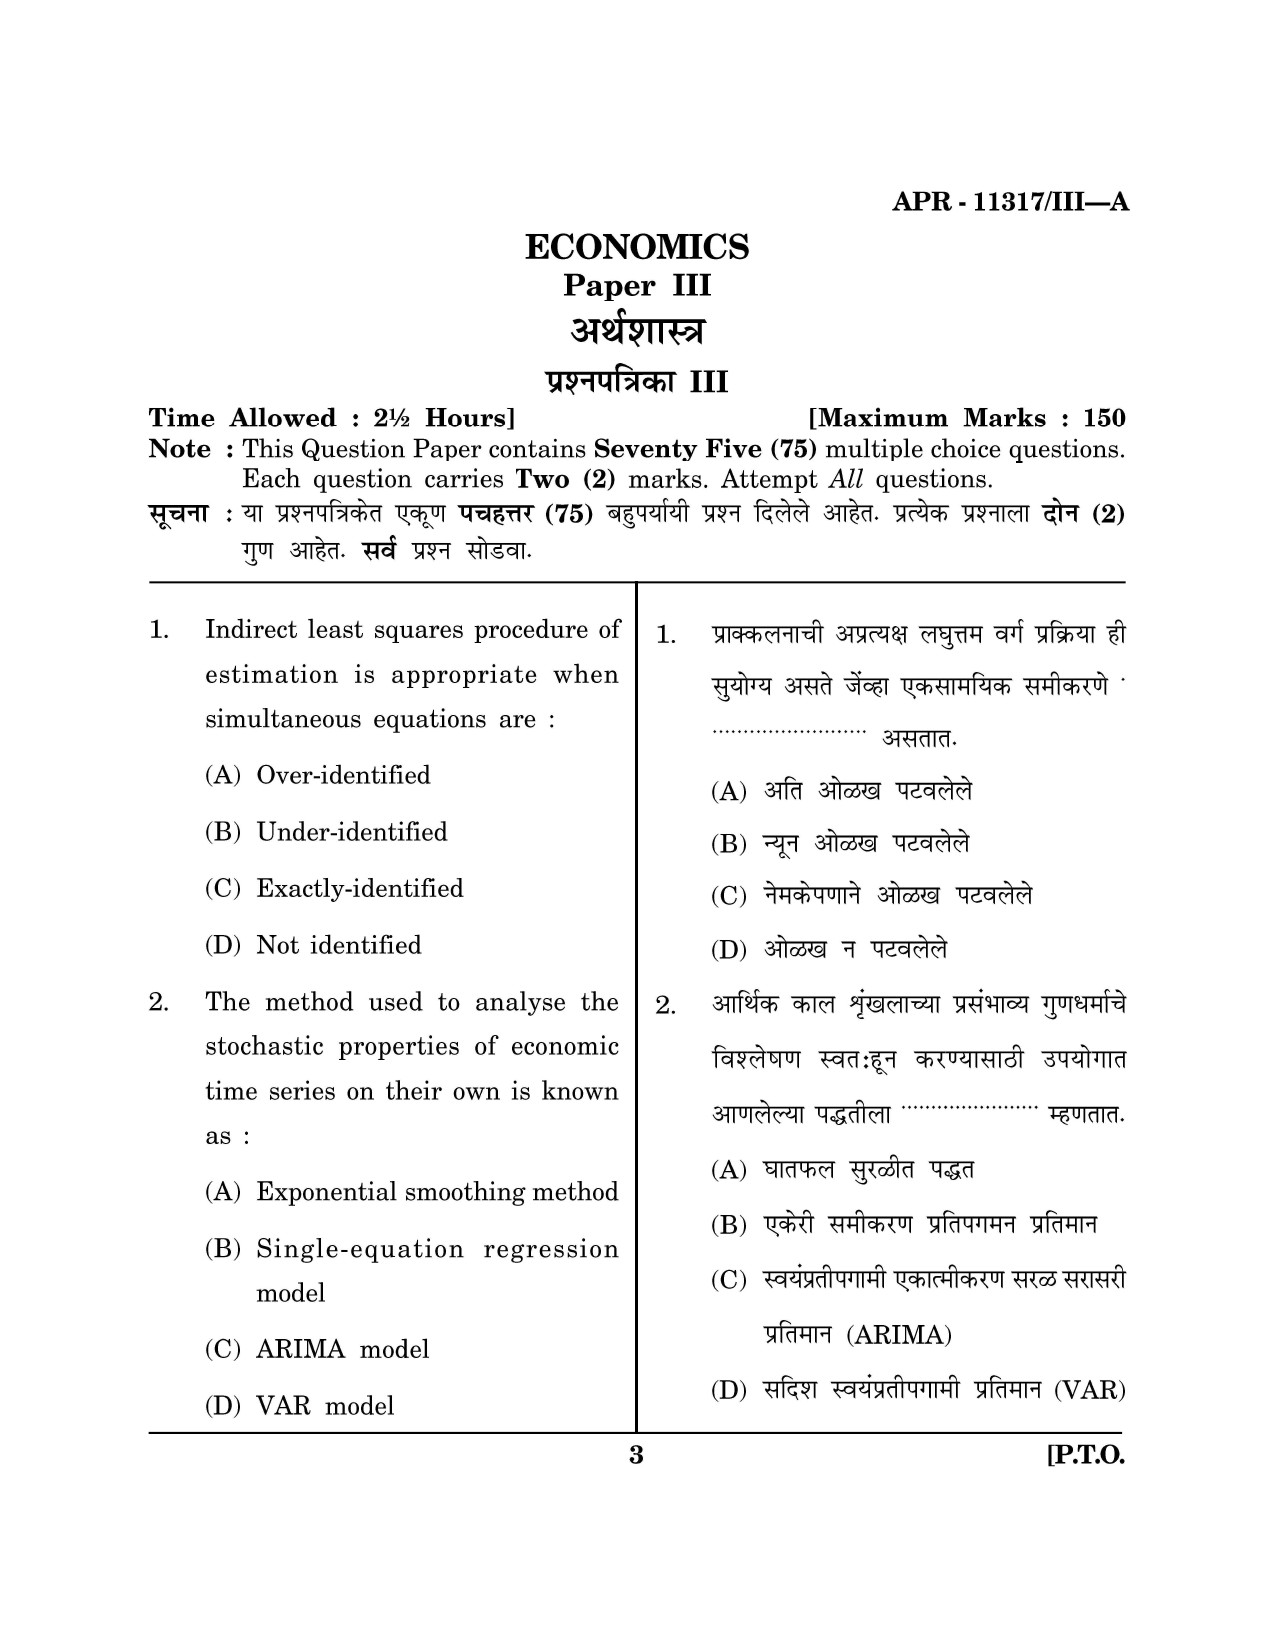 Maharashtra SET Economics Question Paper III April 2017 2